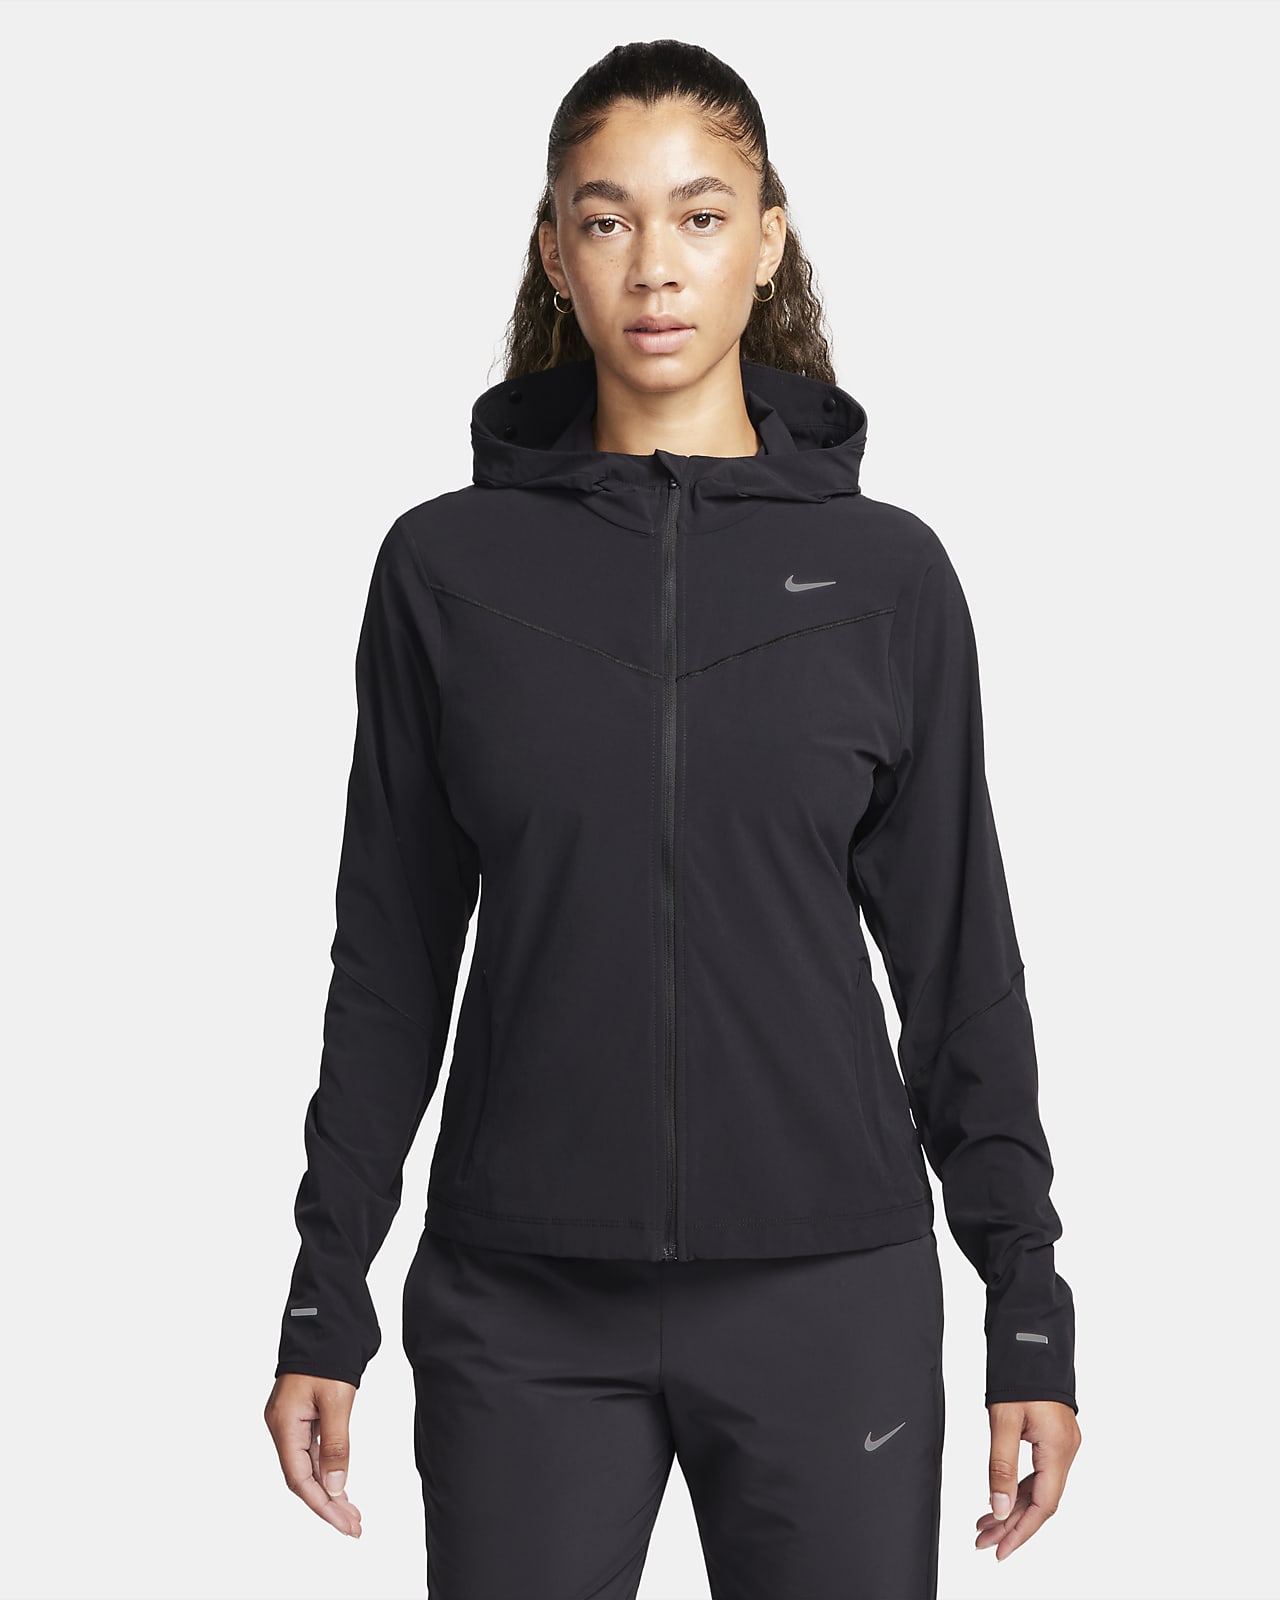 Nike Swift UV hardloopjack voor dames